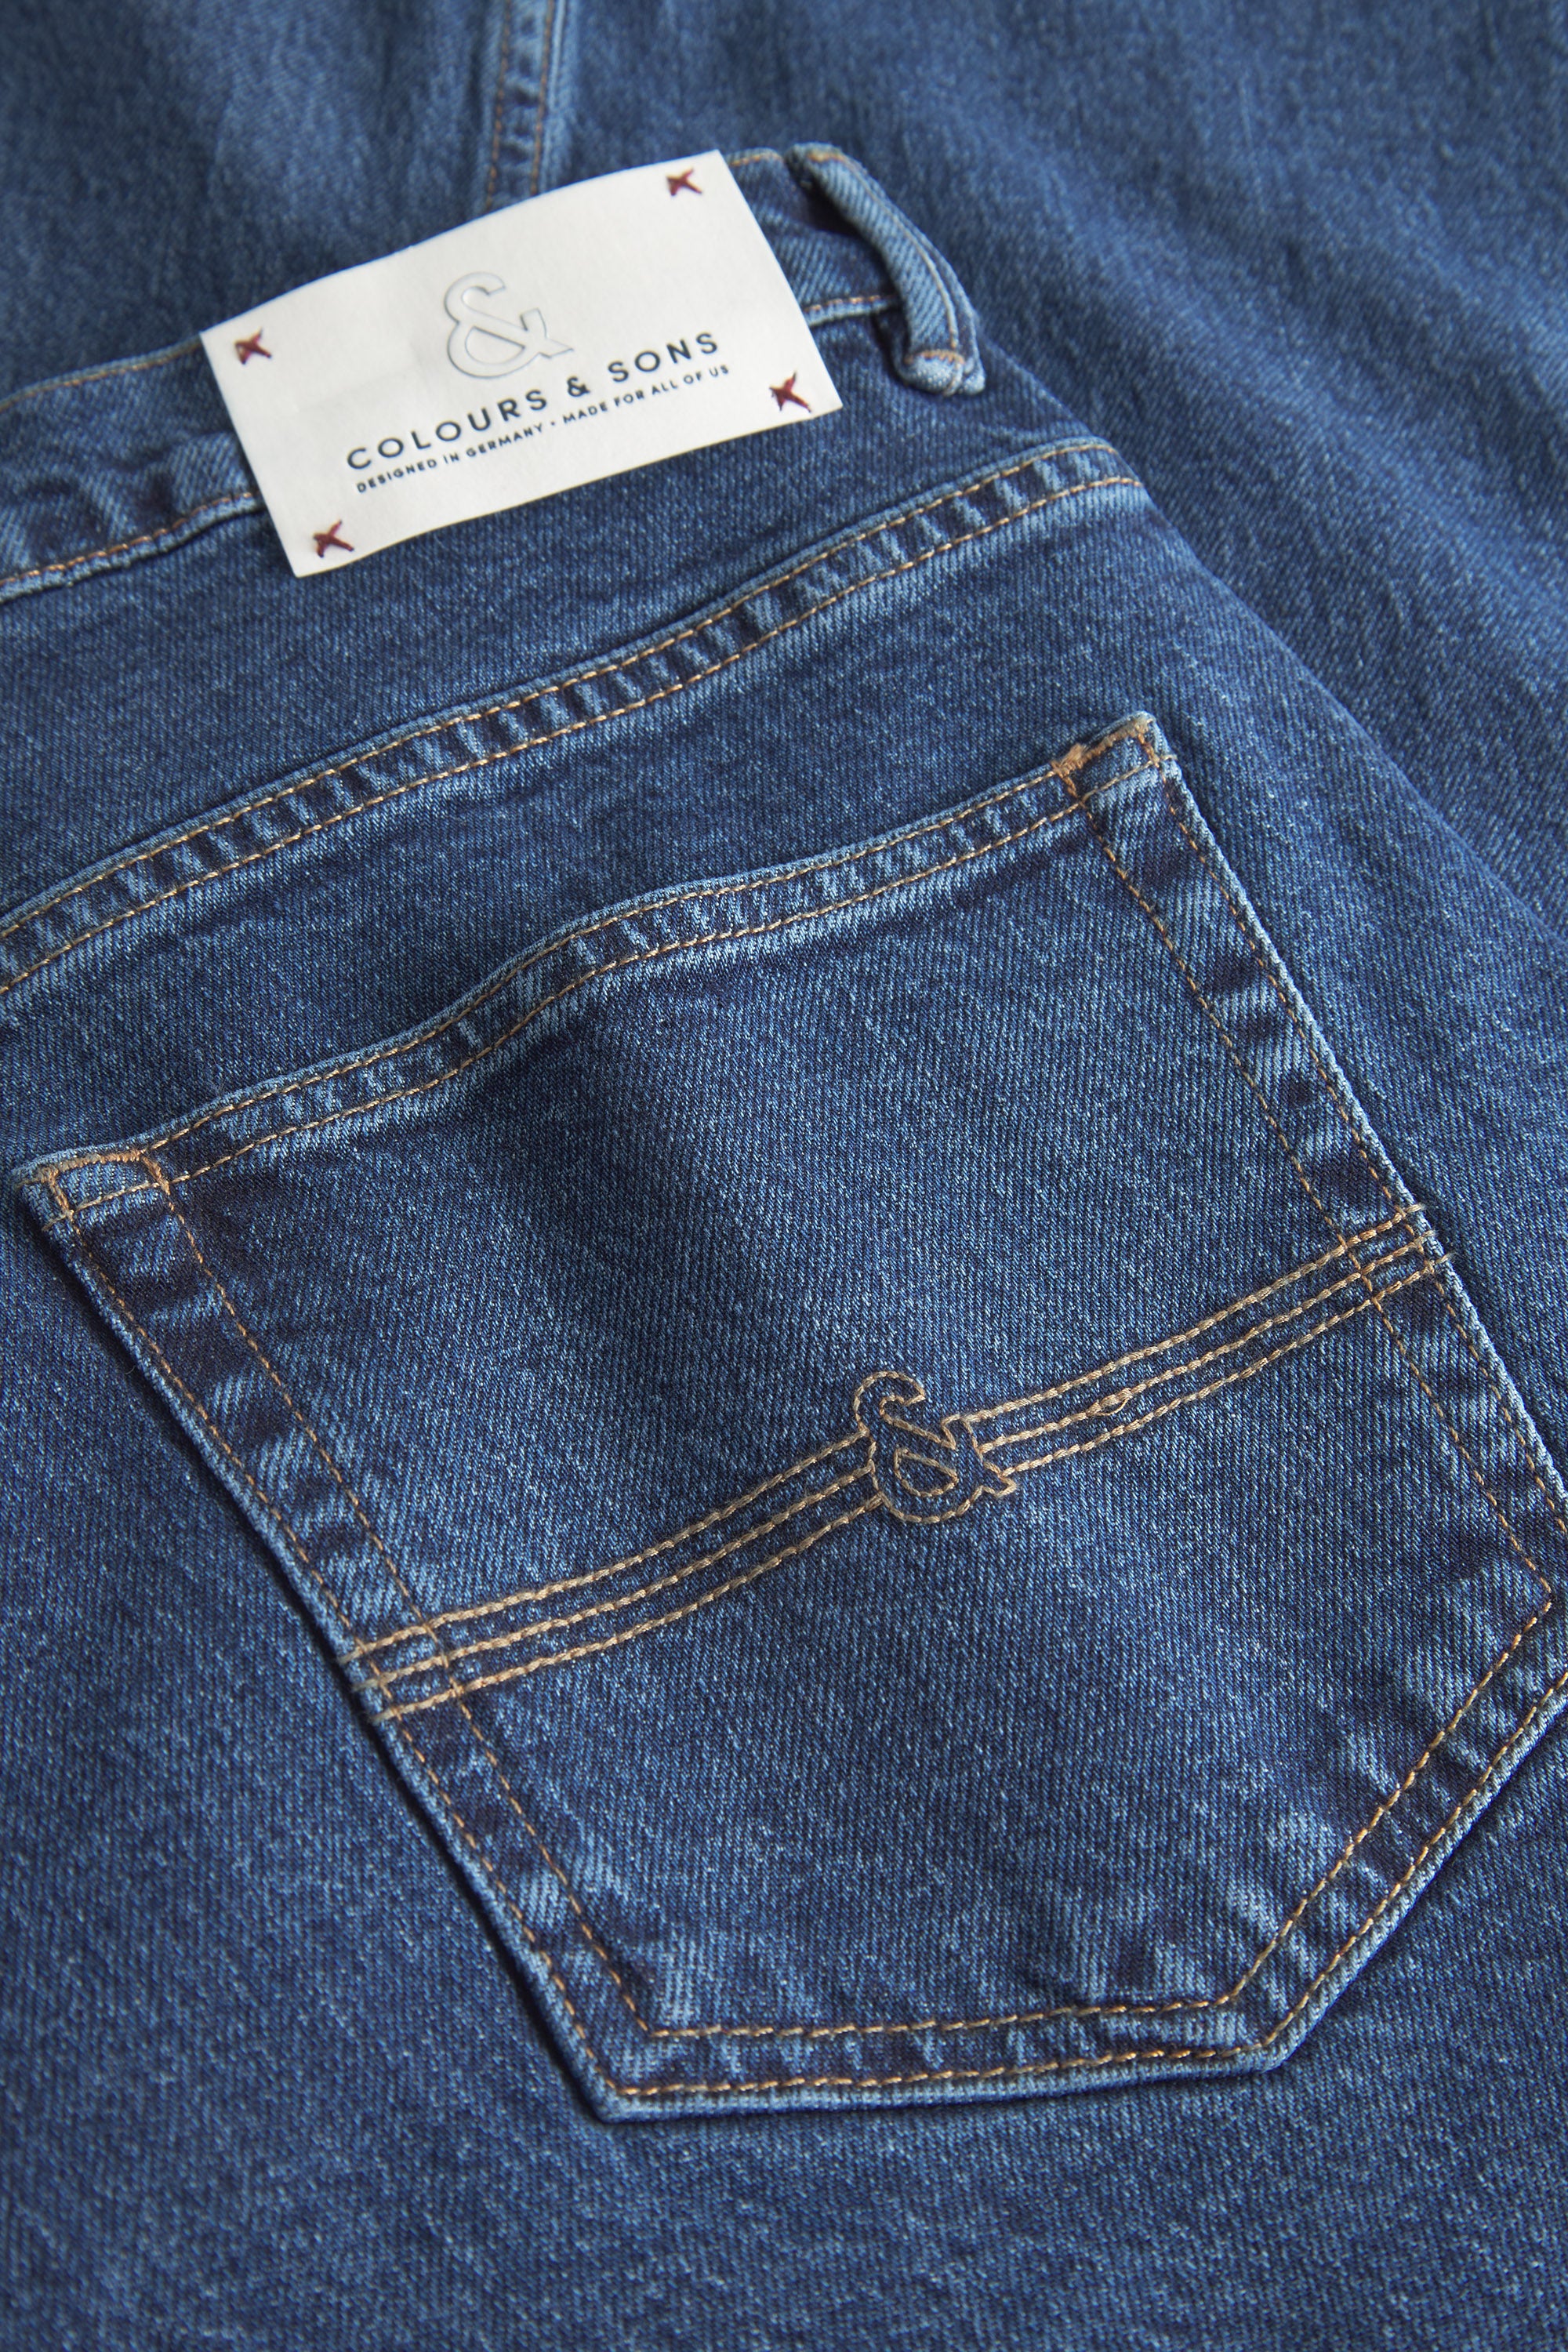 Herren Jeans, blau, 77% Baumwolle 22% recycled Baumwolle 1% Elastan von Colours & Sons